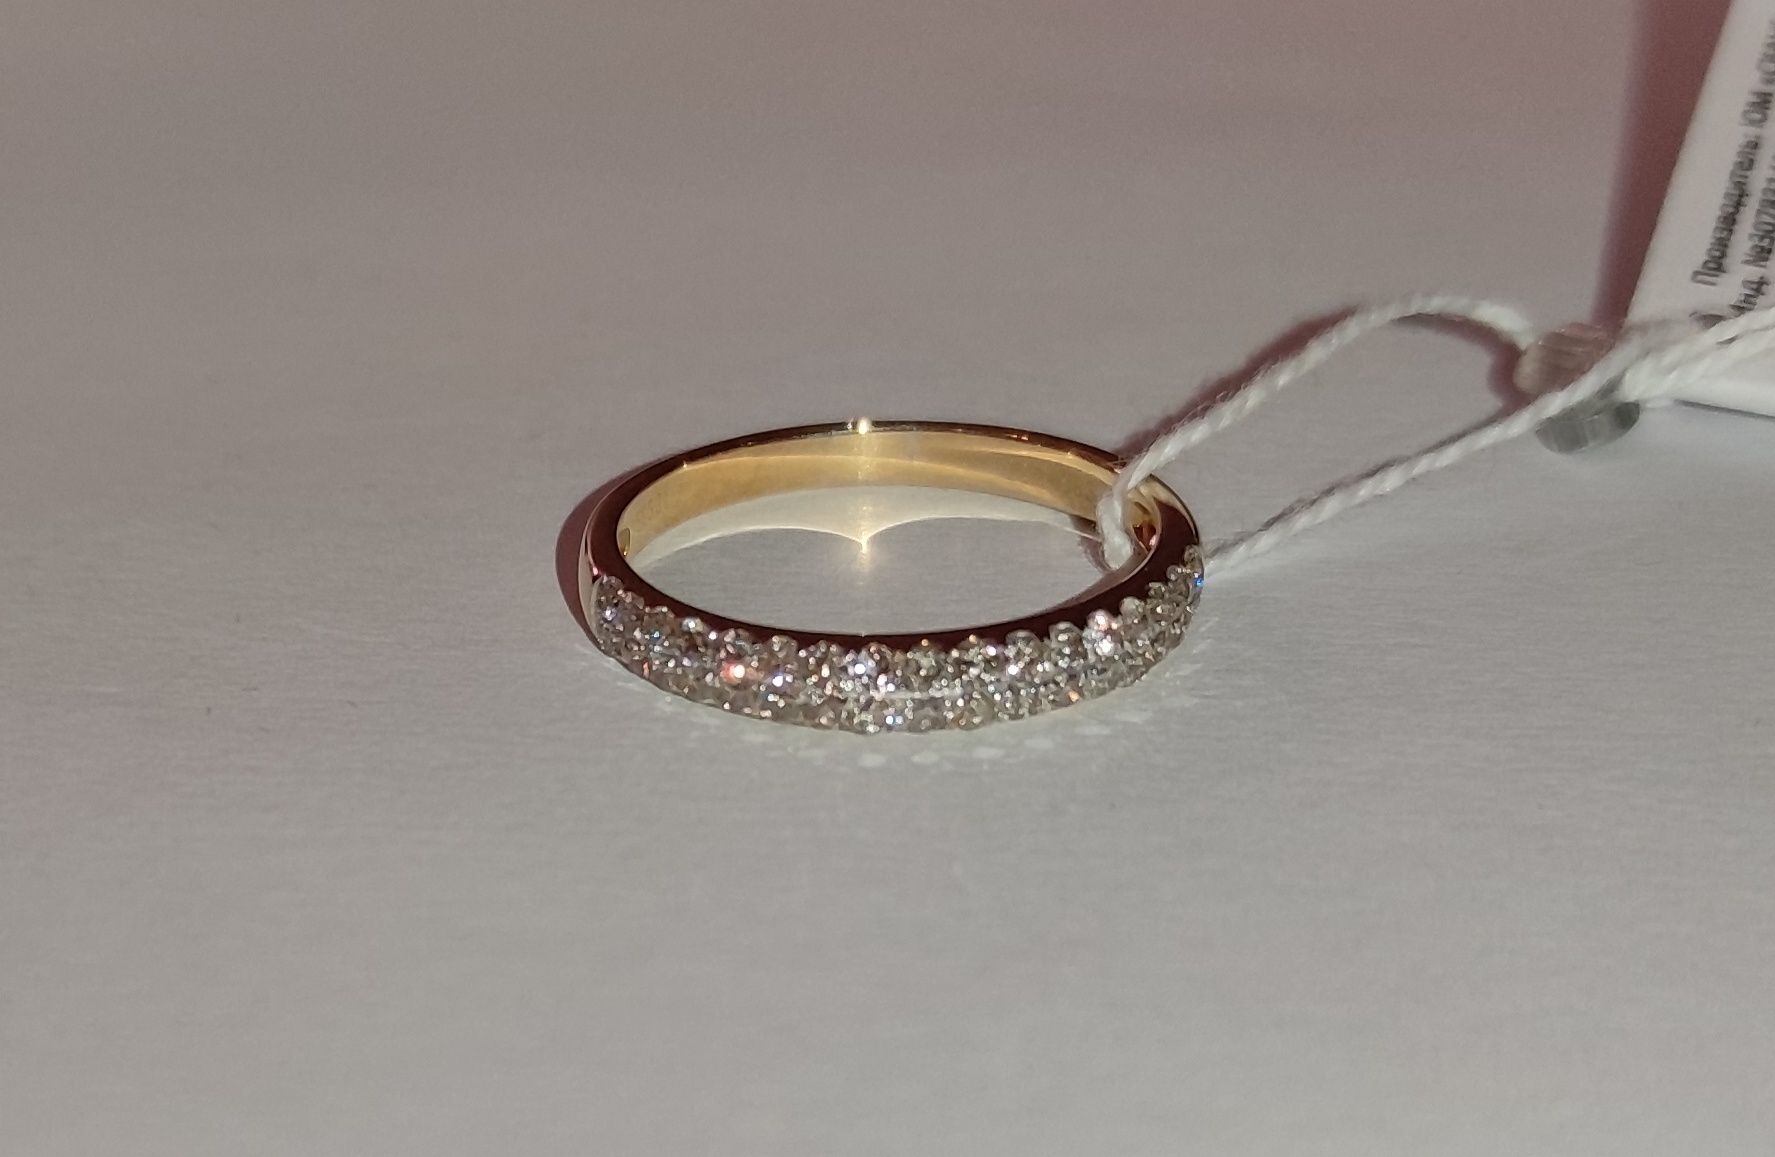 Жіноче золоте кільце з діамантами 0,56 карат 18 мм. Жовте золото. Нове